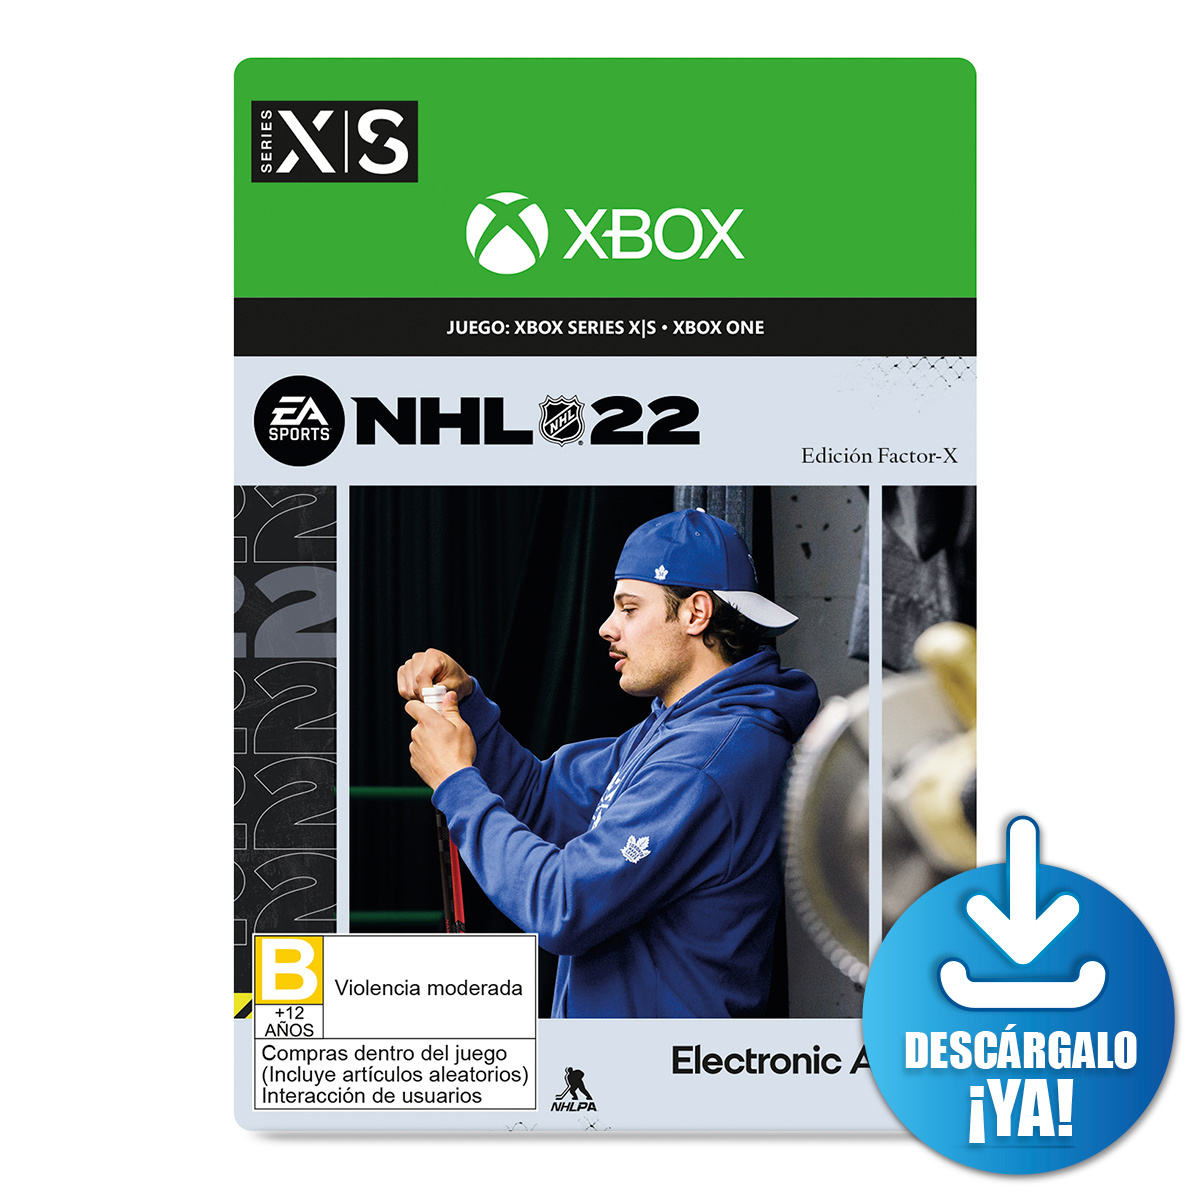 Elden Ring Deluxe Edition / Juego digital / Xbox One / Xbox Series X·S /  Descargable, Juegos Descargables, Xbox, Gamers y Descargables, Todas, Categoría